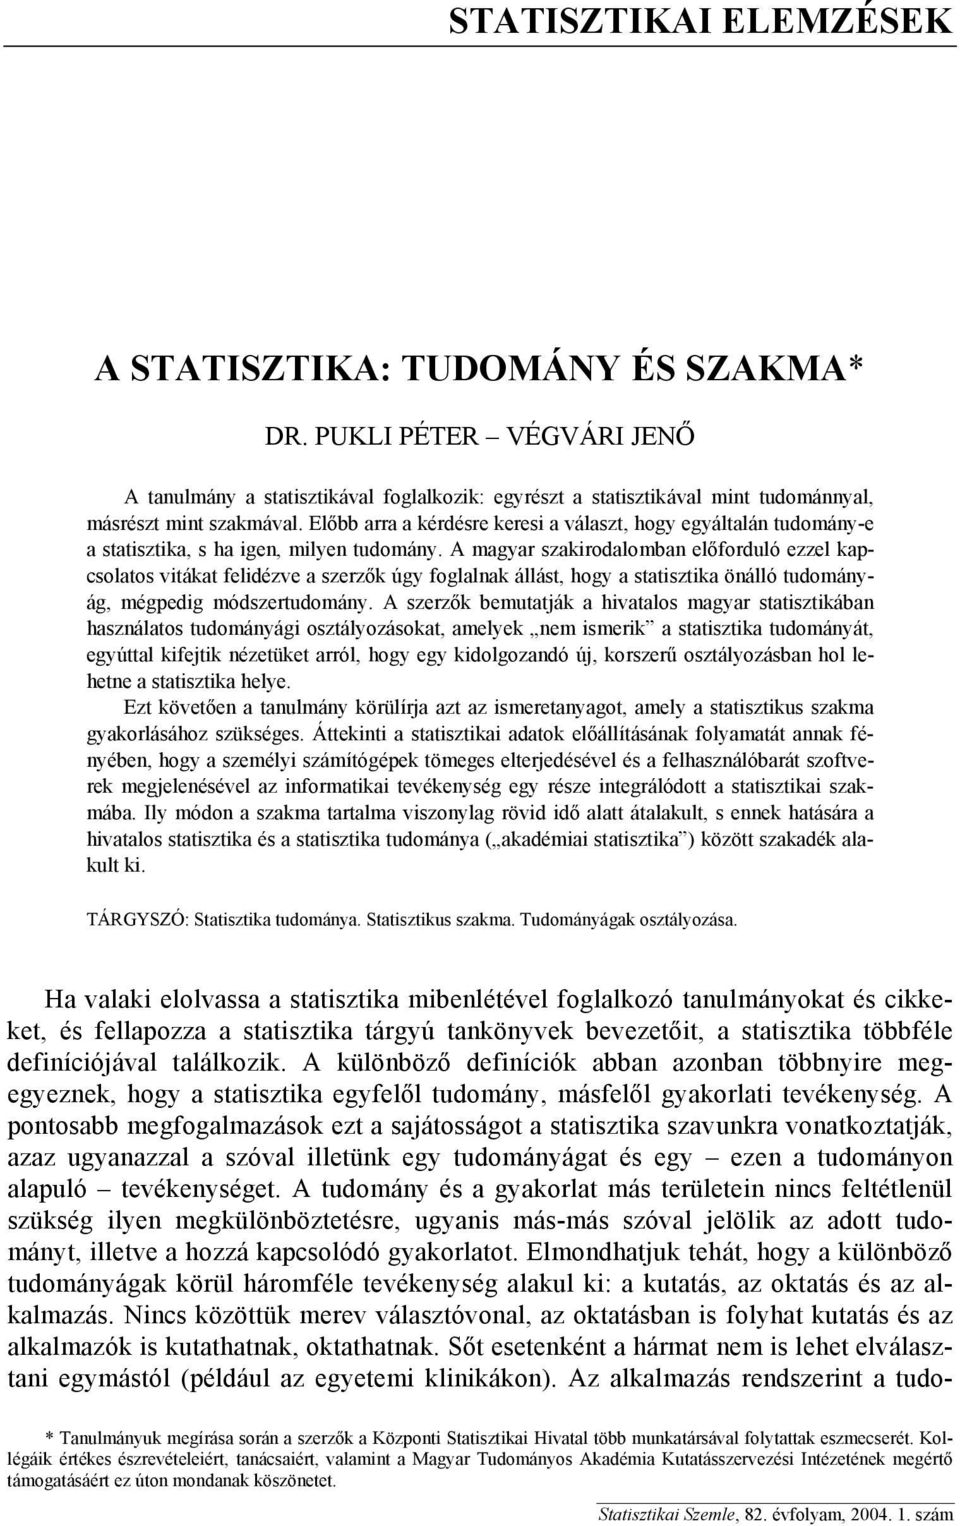 A magyar szakirodalomban előforduló ezzel kapcsolatos vitákat felidézve a szerzők úgy foglalnak állást, hogy a statisztika önálló tudományág, mégpedig módszertudomány.